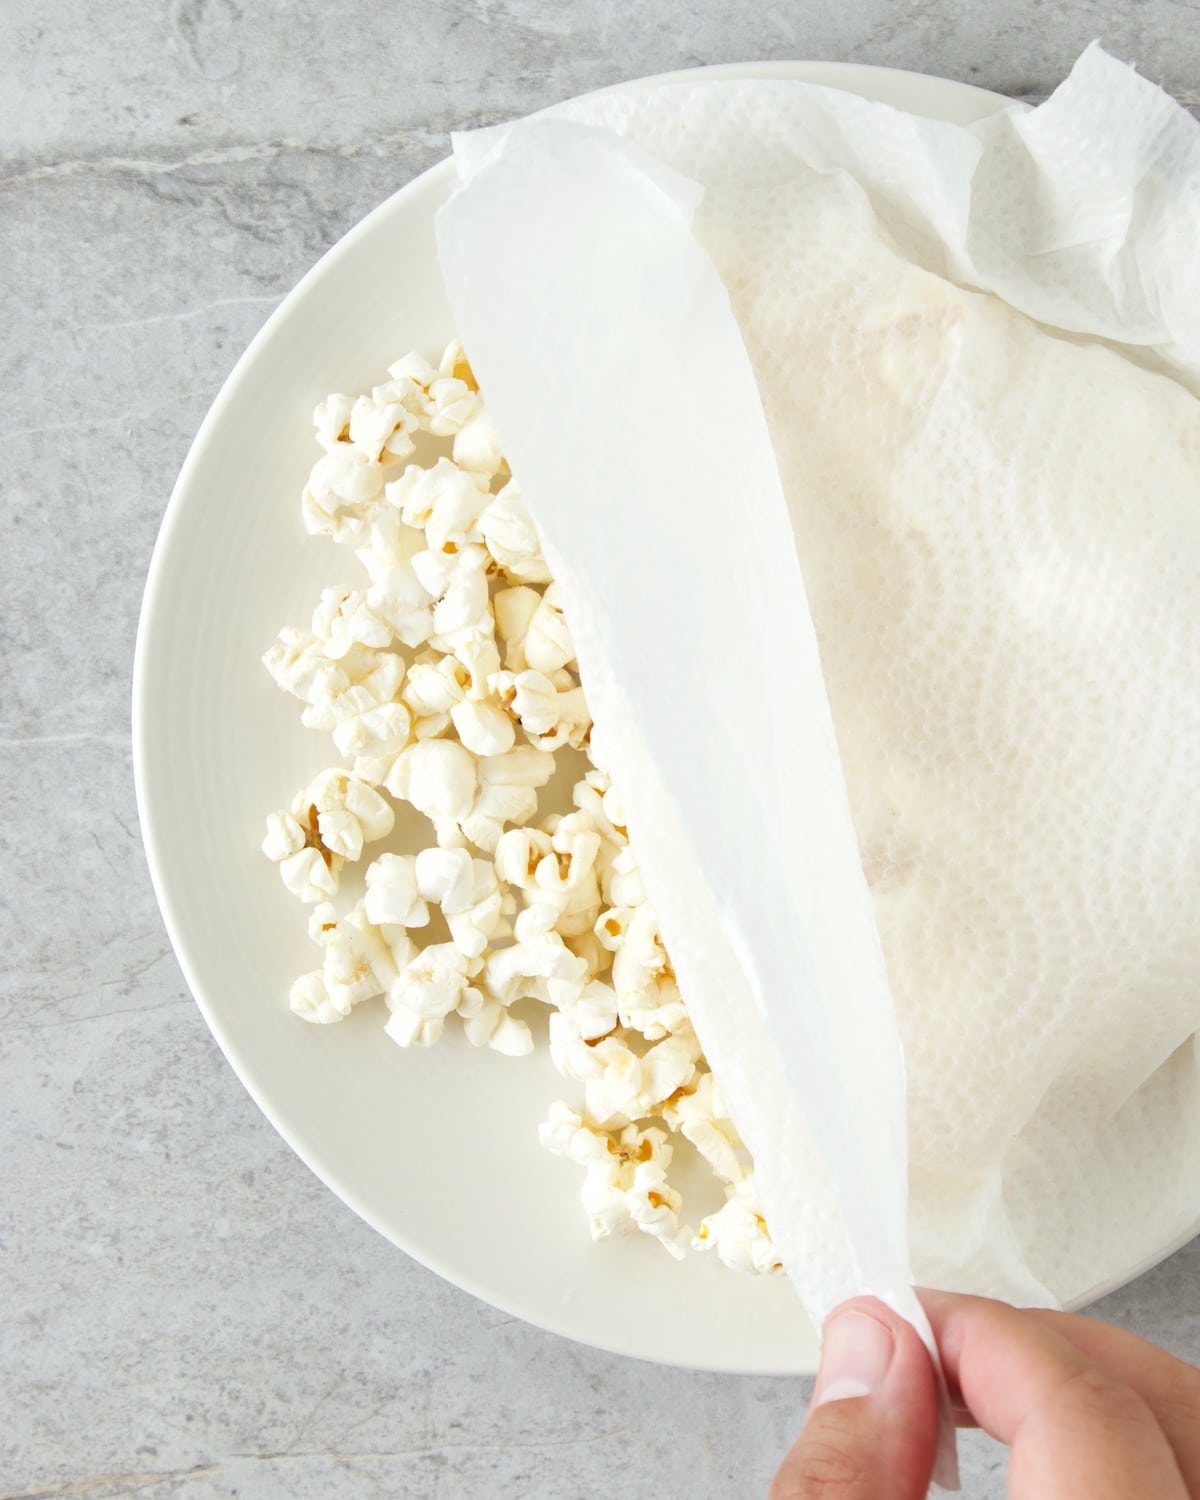 how do you reheat popcorn